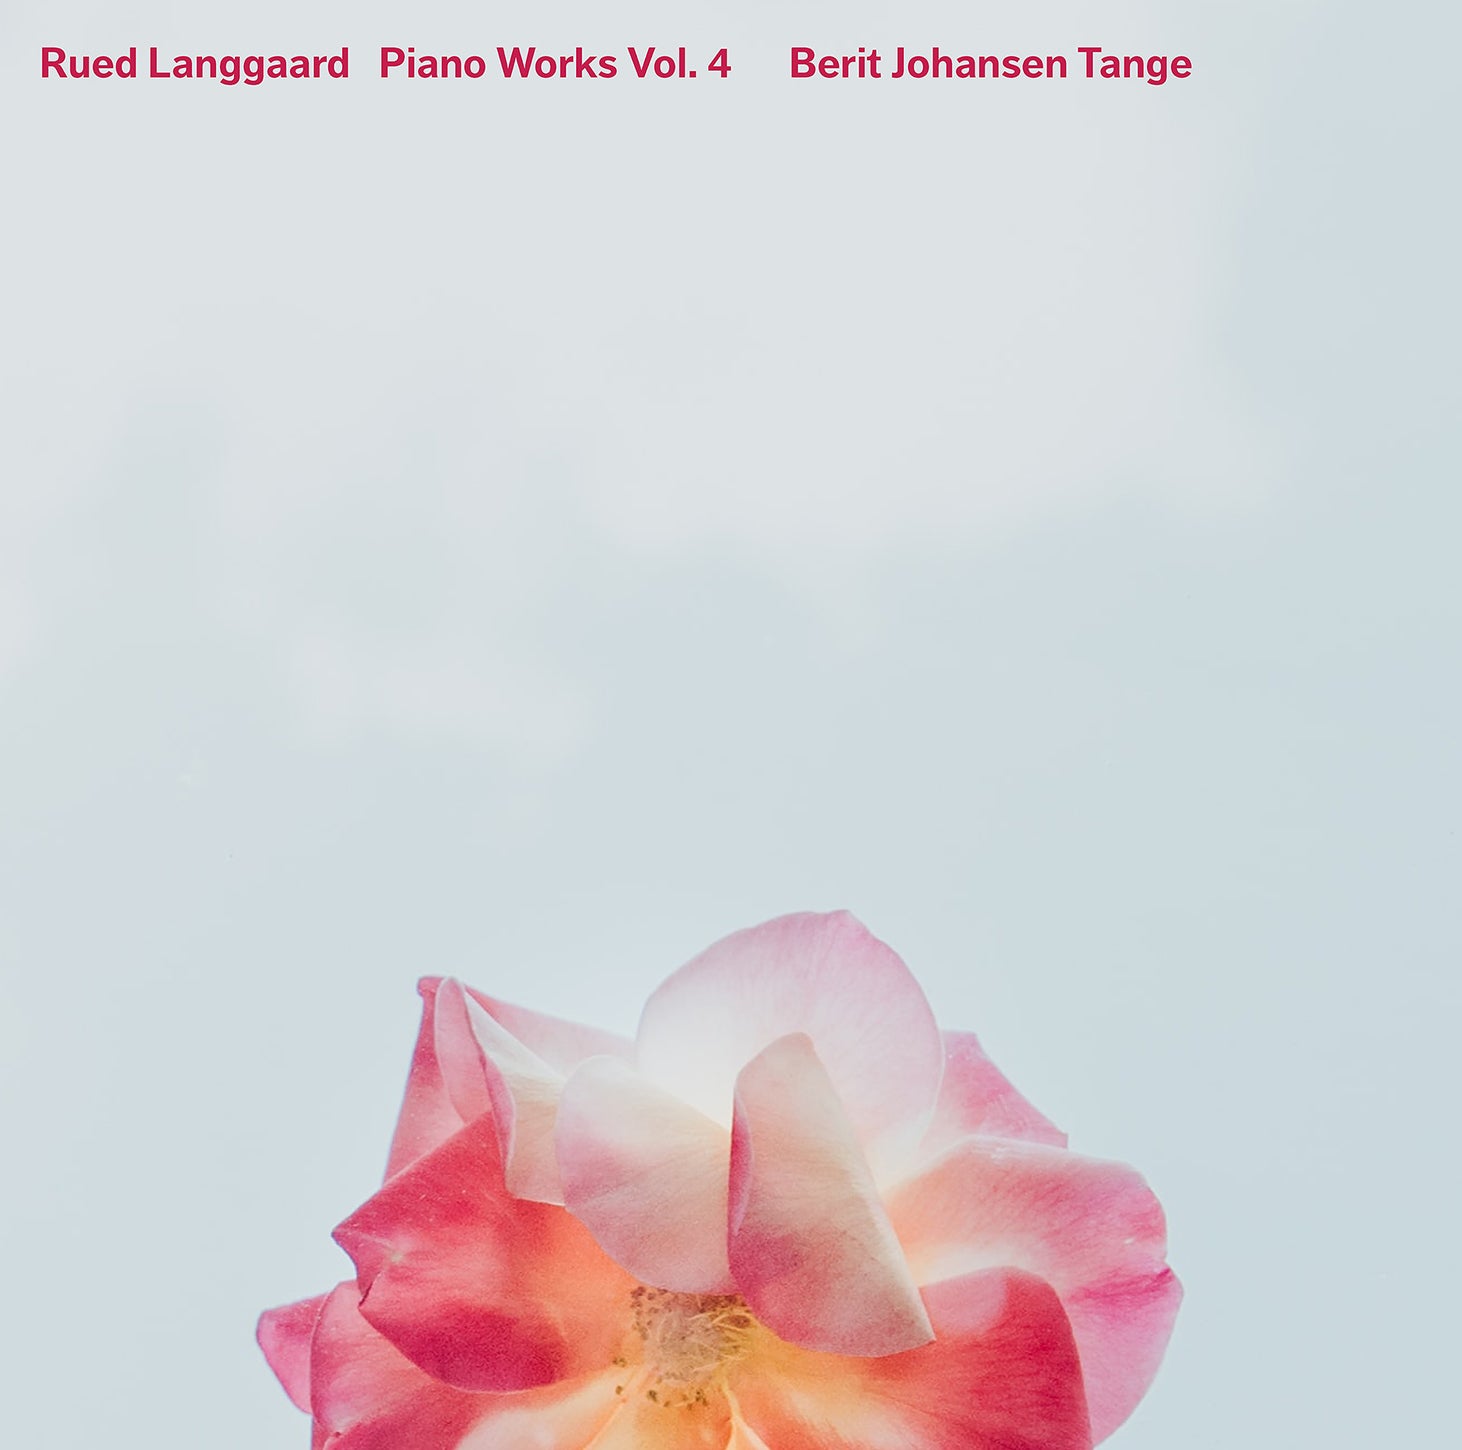 Langgaard: Piano Works, Vol. 4 / Tange